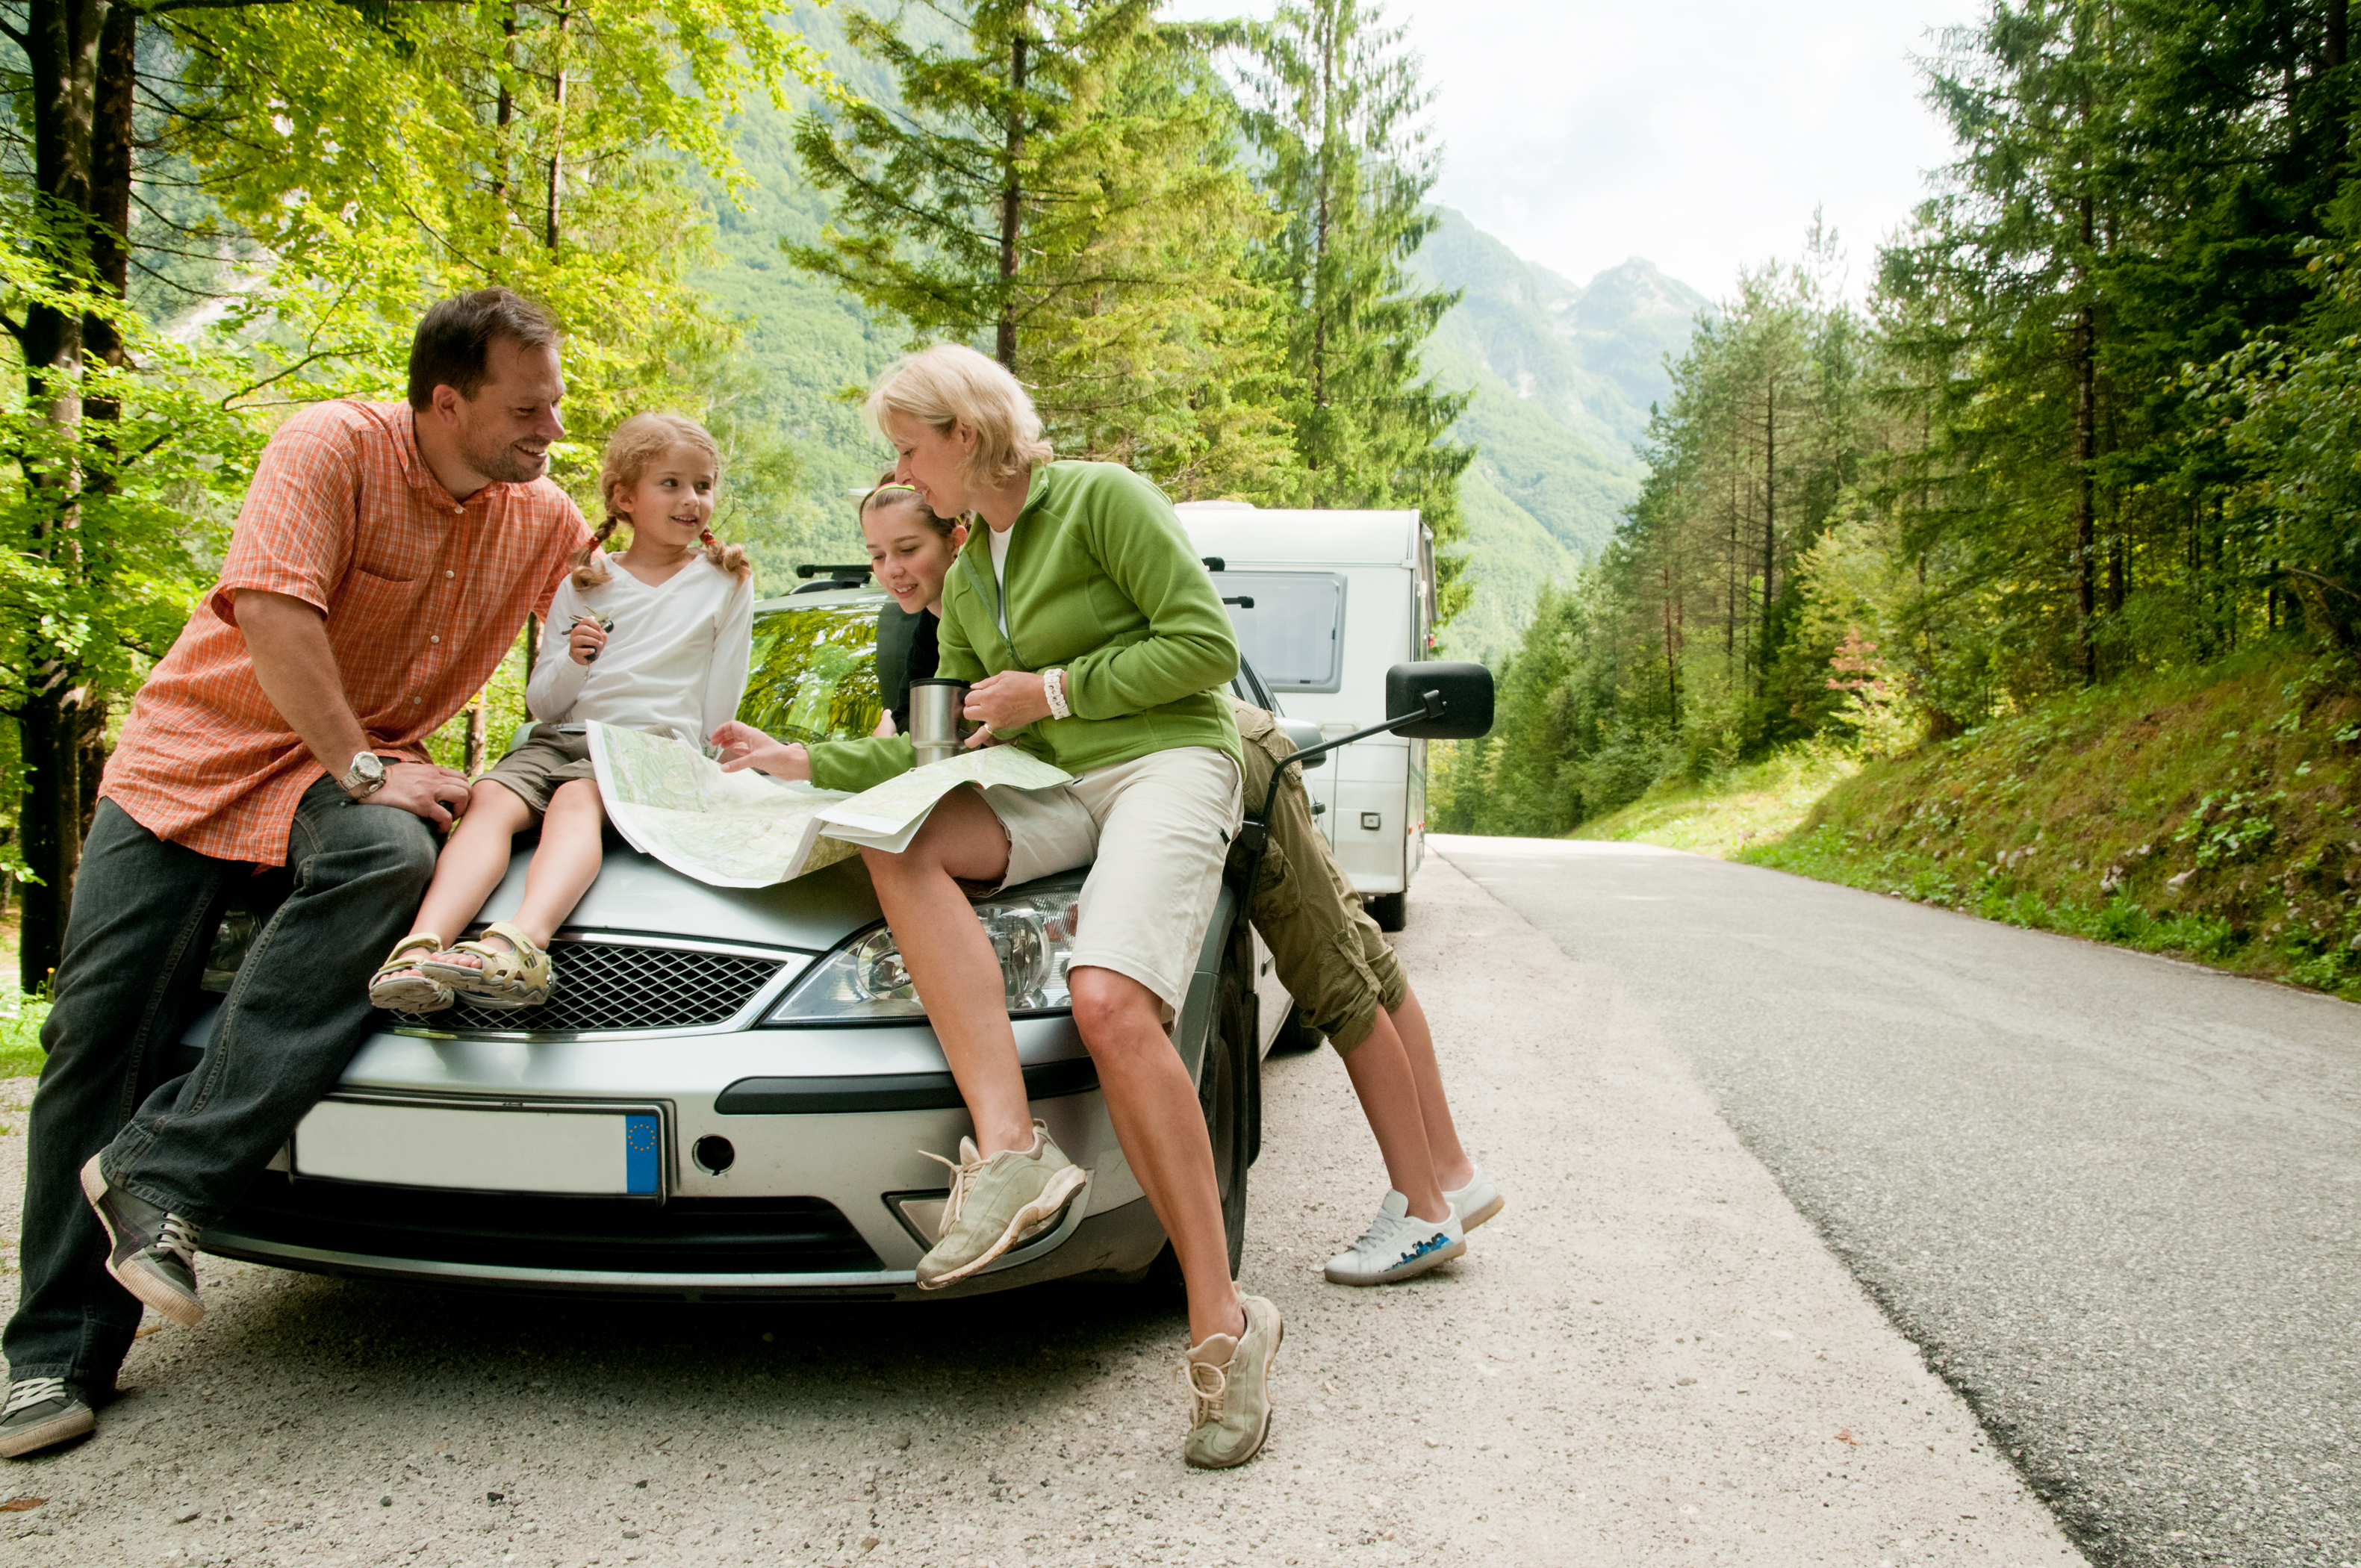 Едет навестить. Семья в машине. Путешествие с семьей. Путешествие на машине. Лучший семейный автомобиль для путешествий.